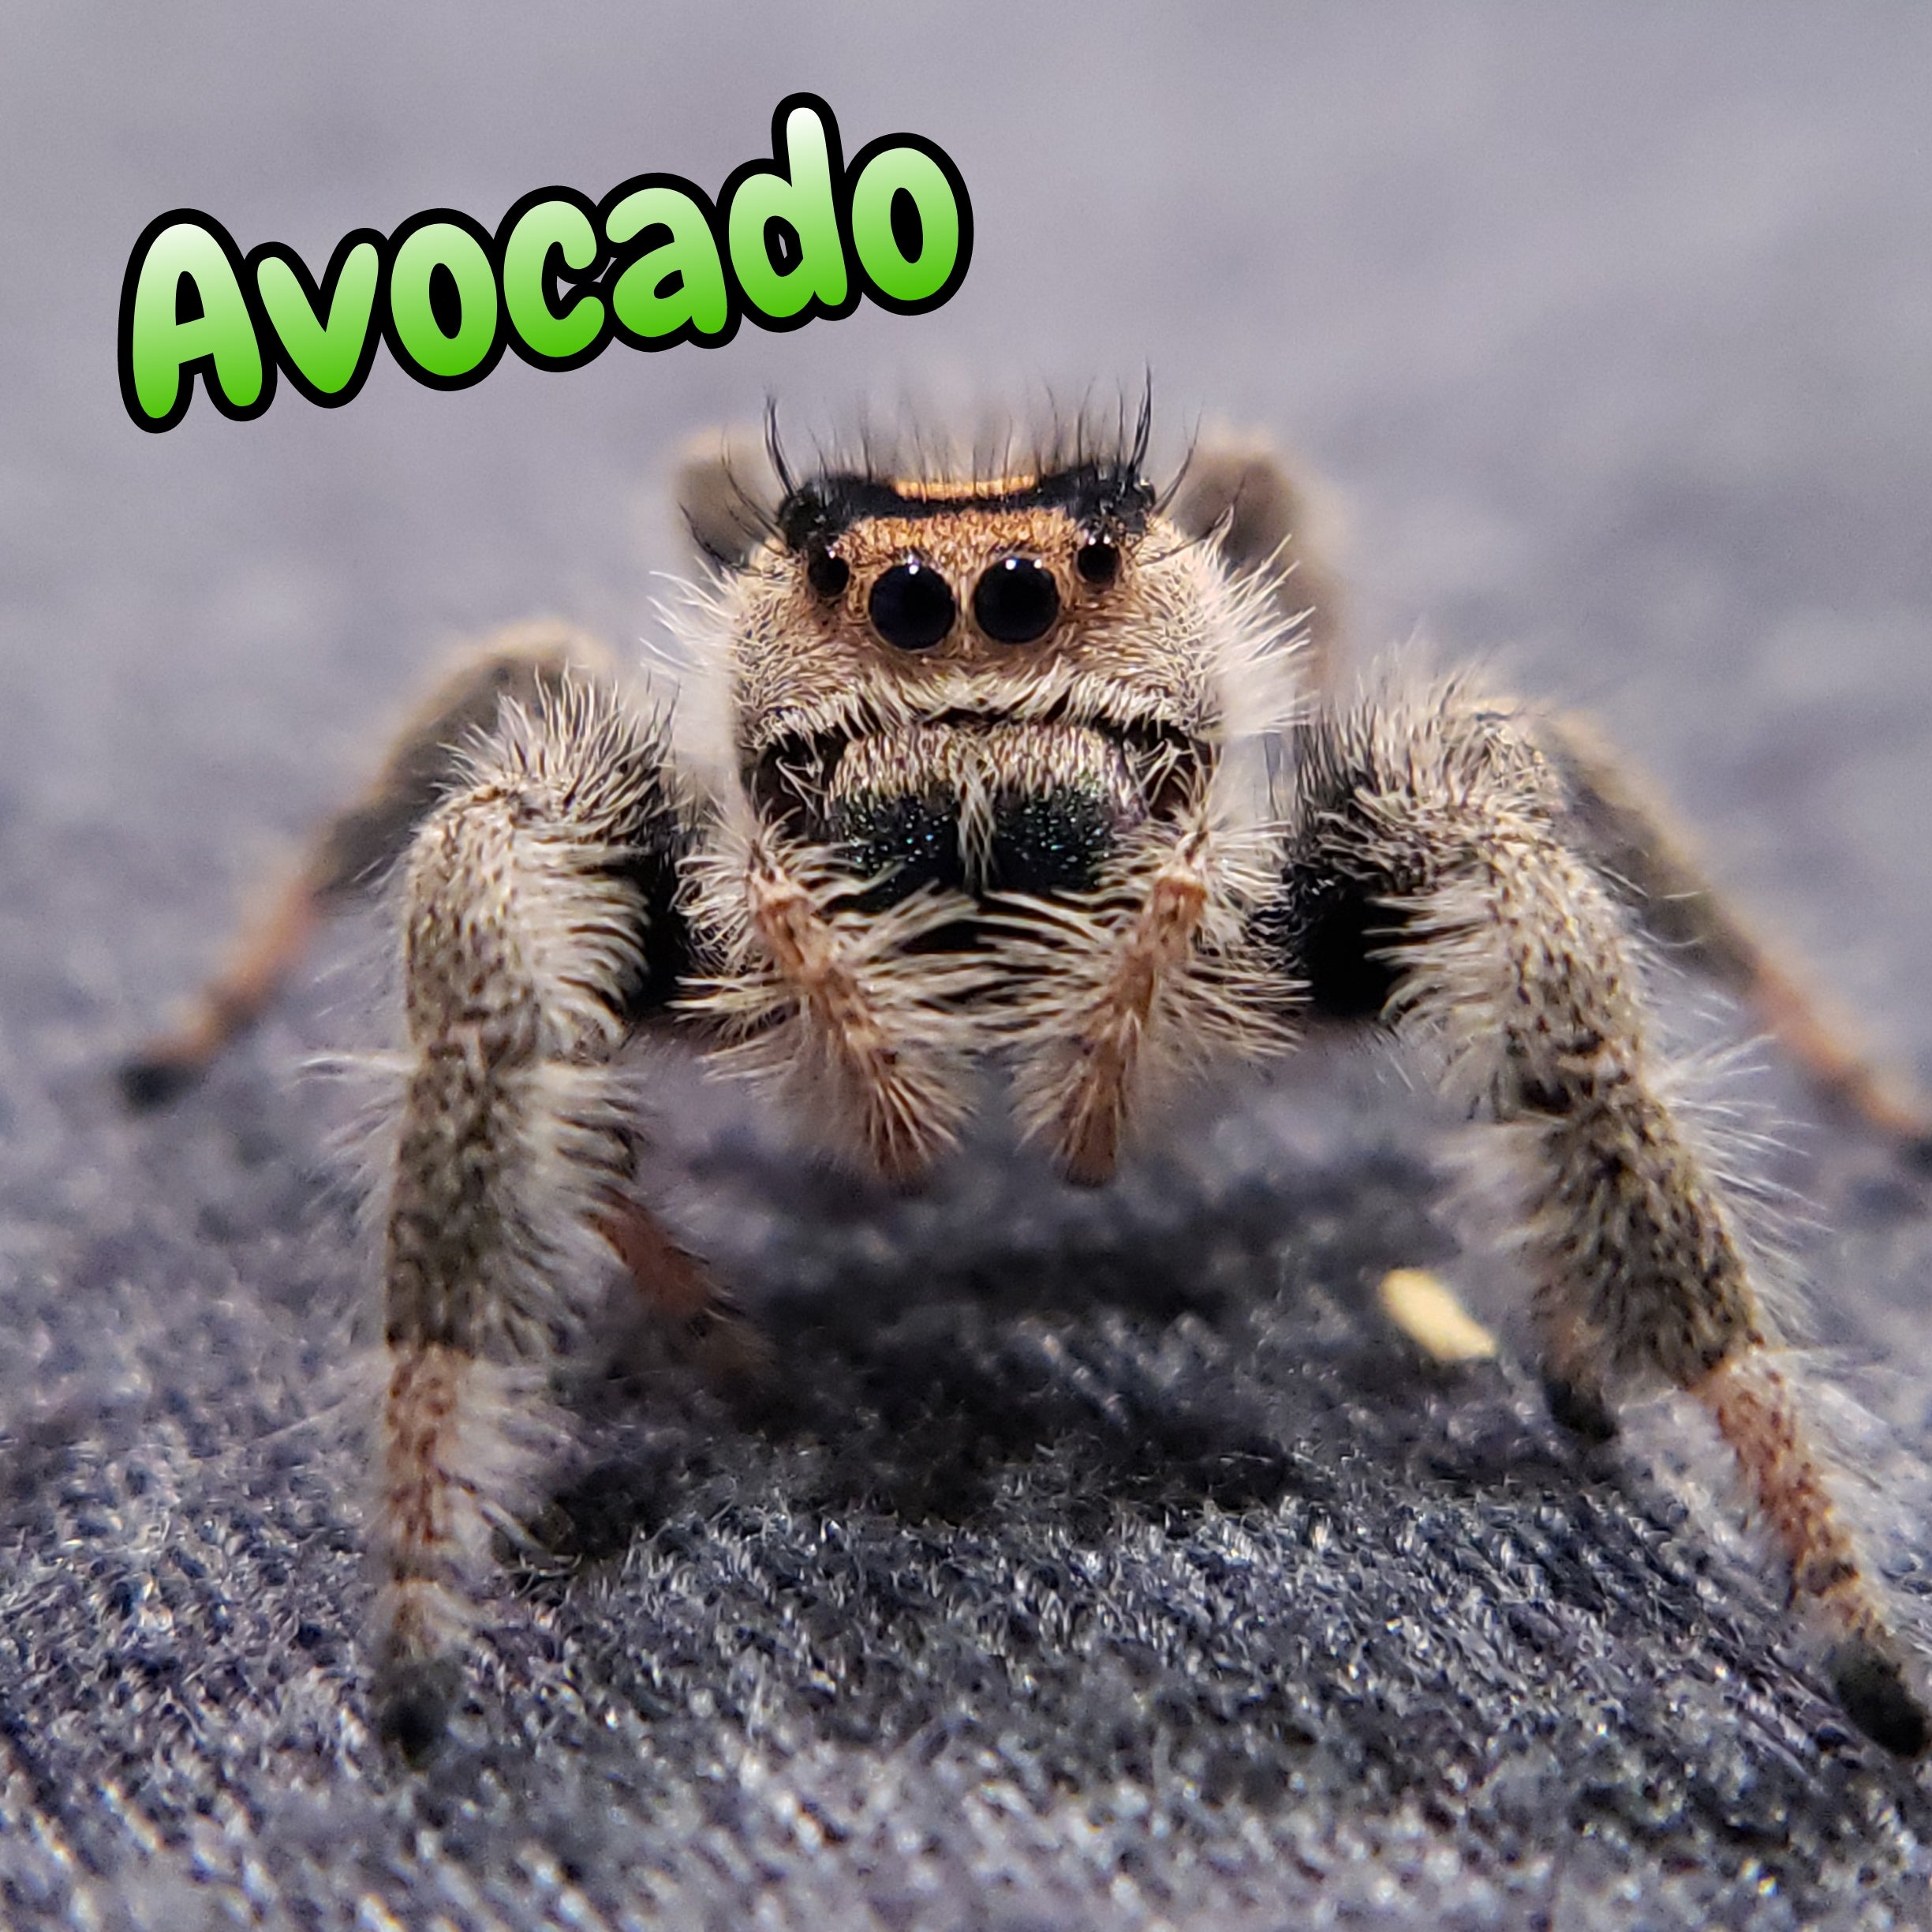 Regal Jumping Spider "Avocado"